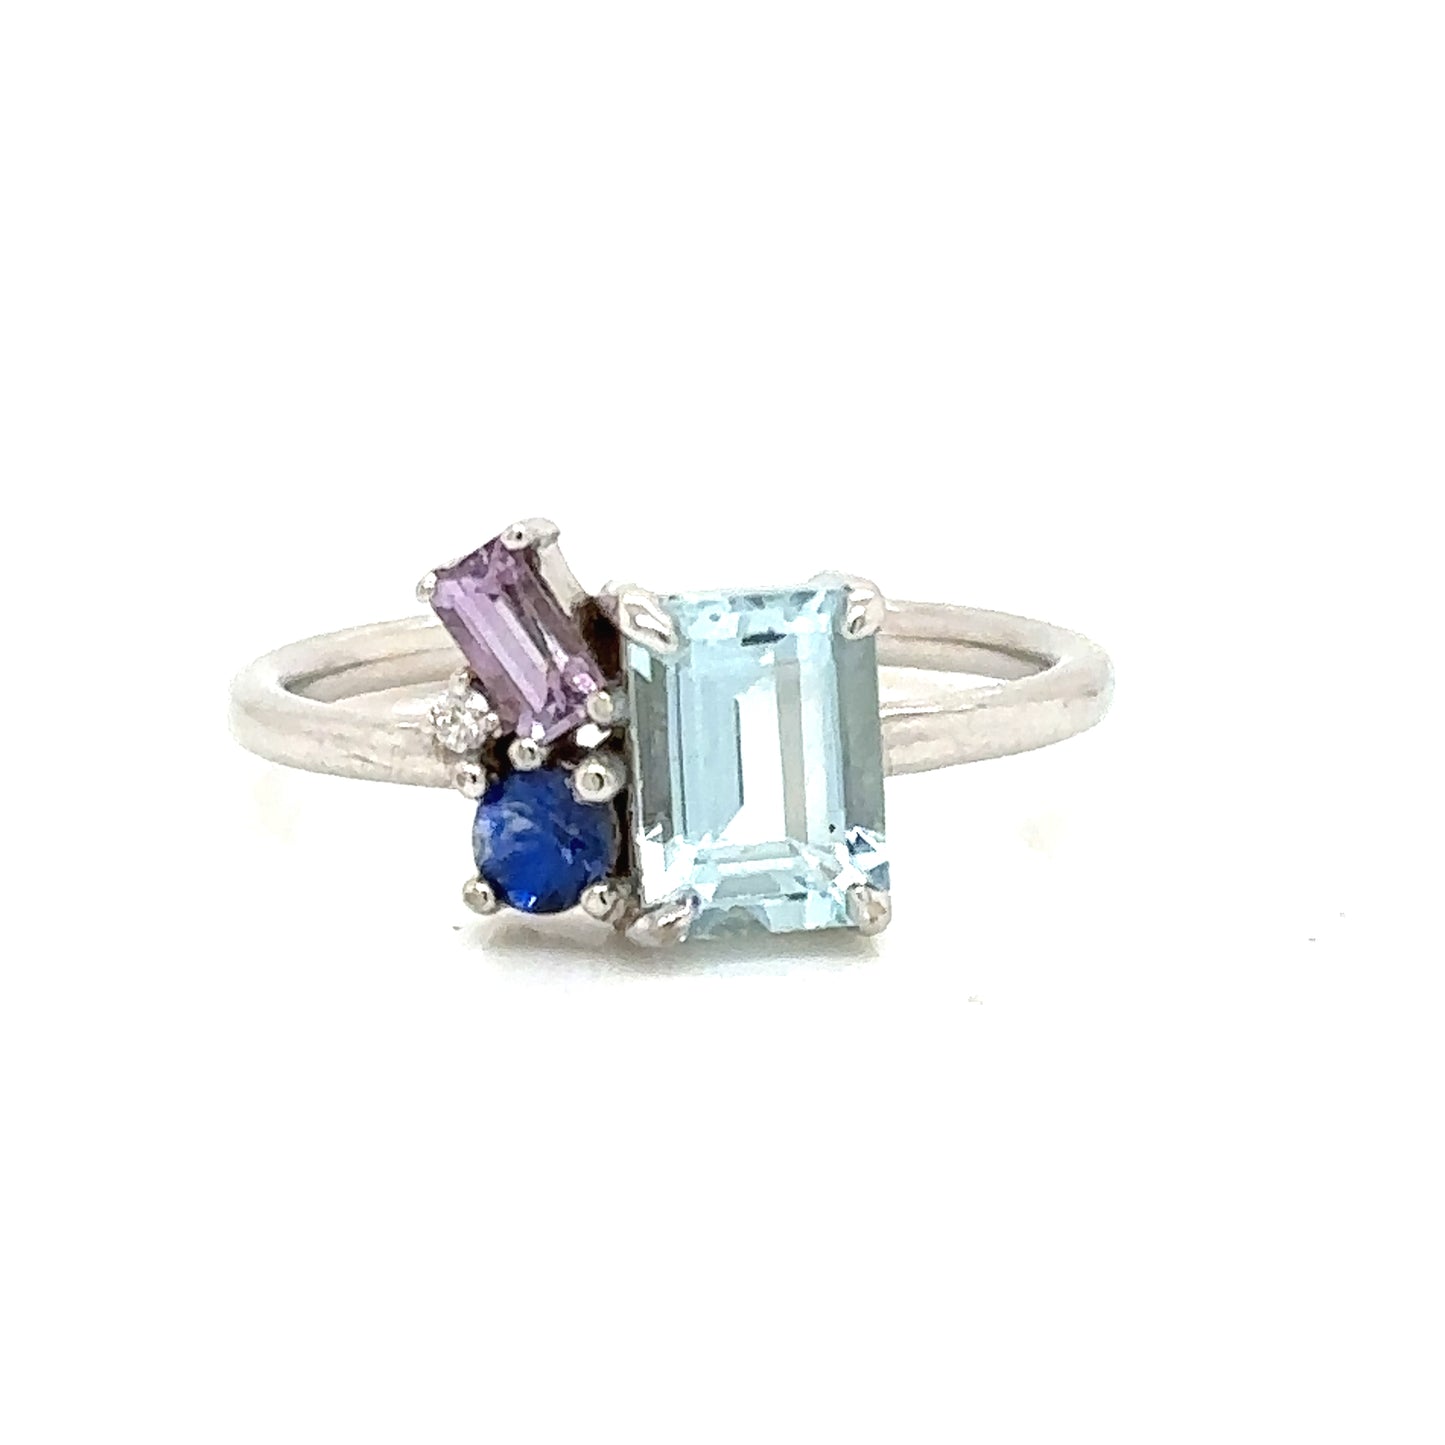 ENTREGA INMEDIATA / Anillo de Aguamarina con zafiro azul, zafiro rosa y diamante / oro blanco 14k / Talla 6